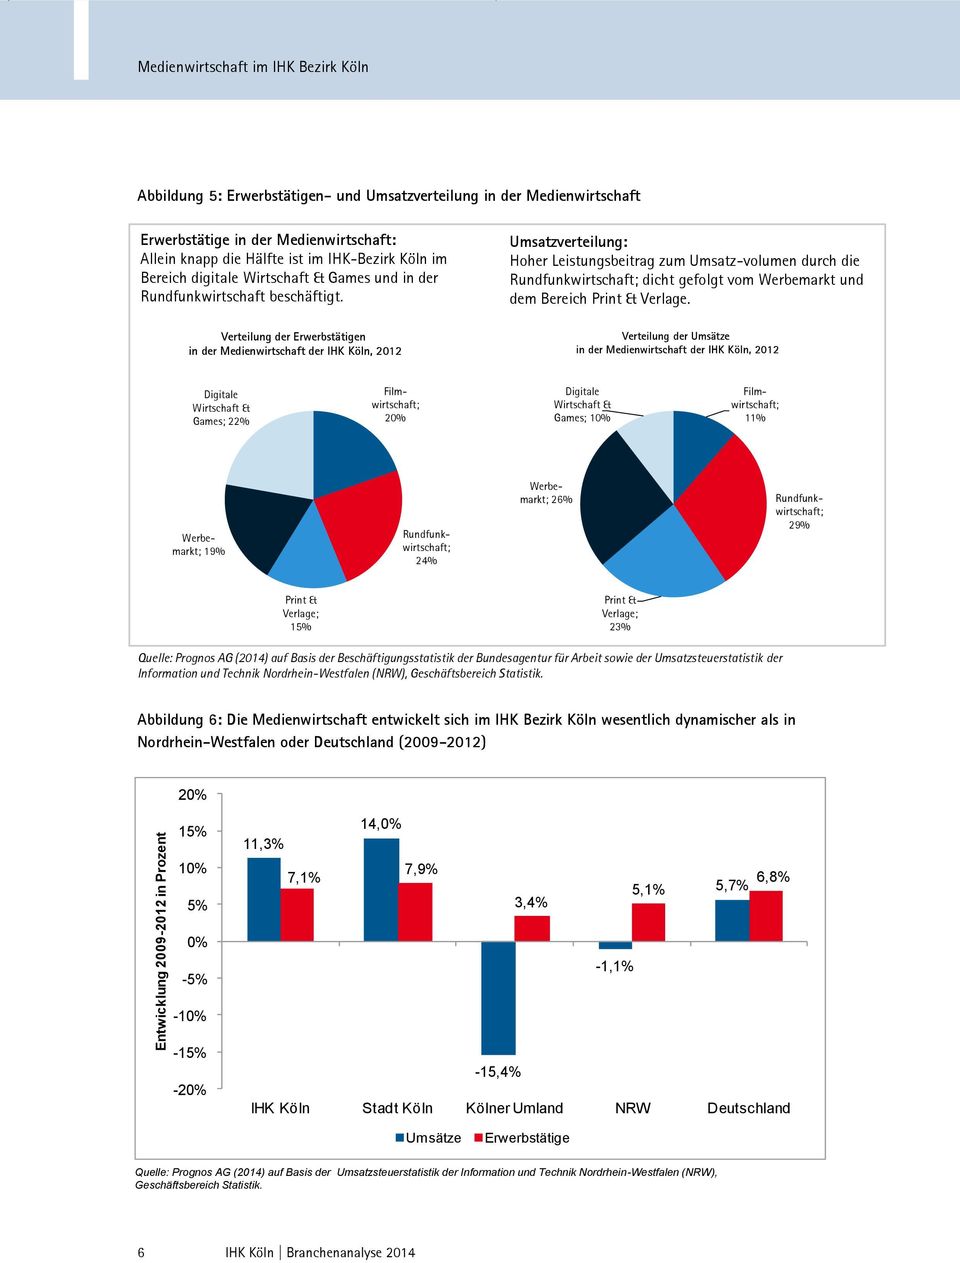 Verteilung der n in der Medienwirtschaft der IHK Köln, 2012 Umsatzverteilung: Hoher Leistungsbeitrag zum Umsatz-volumen durch die Rundfunkwirtschaft; dicht gefolgt vom Werbemarkt und dem Bereich